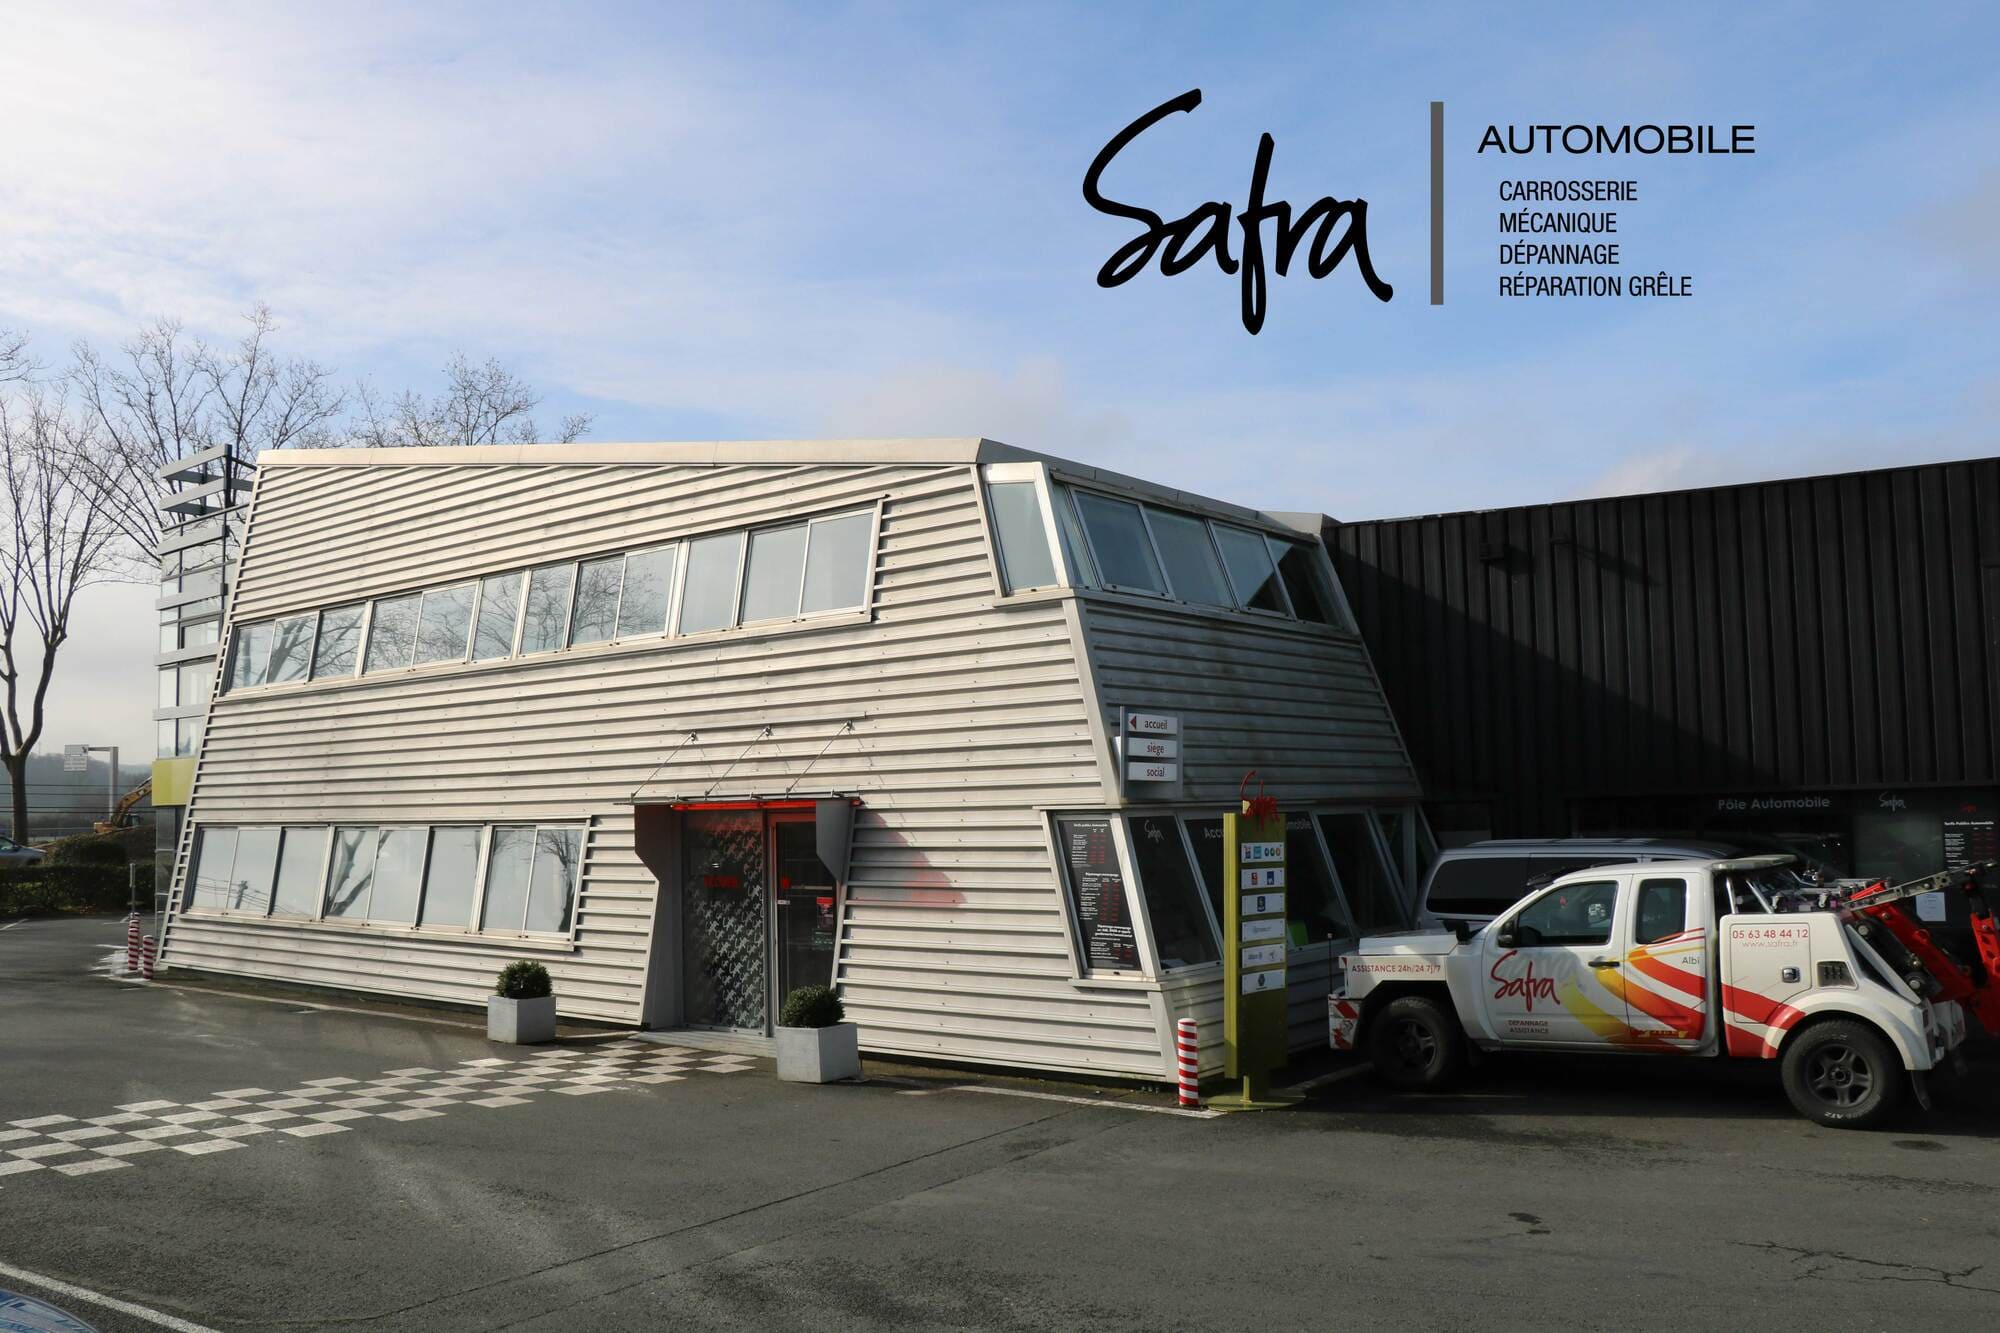 Lire la suite à propos de l’article SAFRA Automobile reste ouvert pendant le confinement